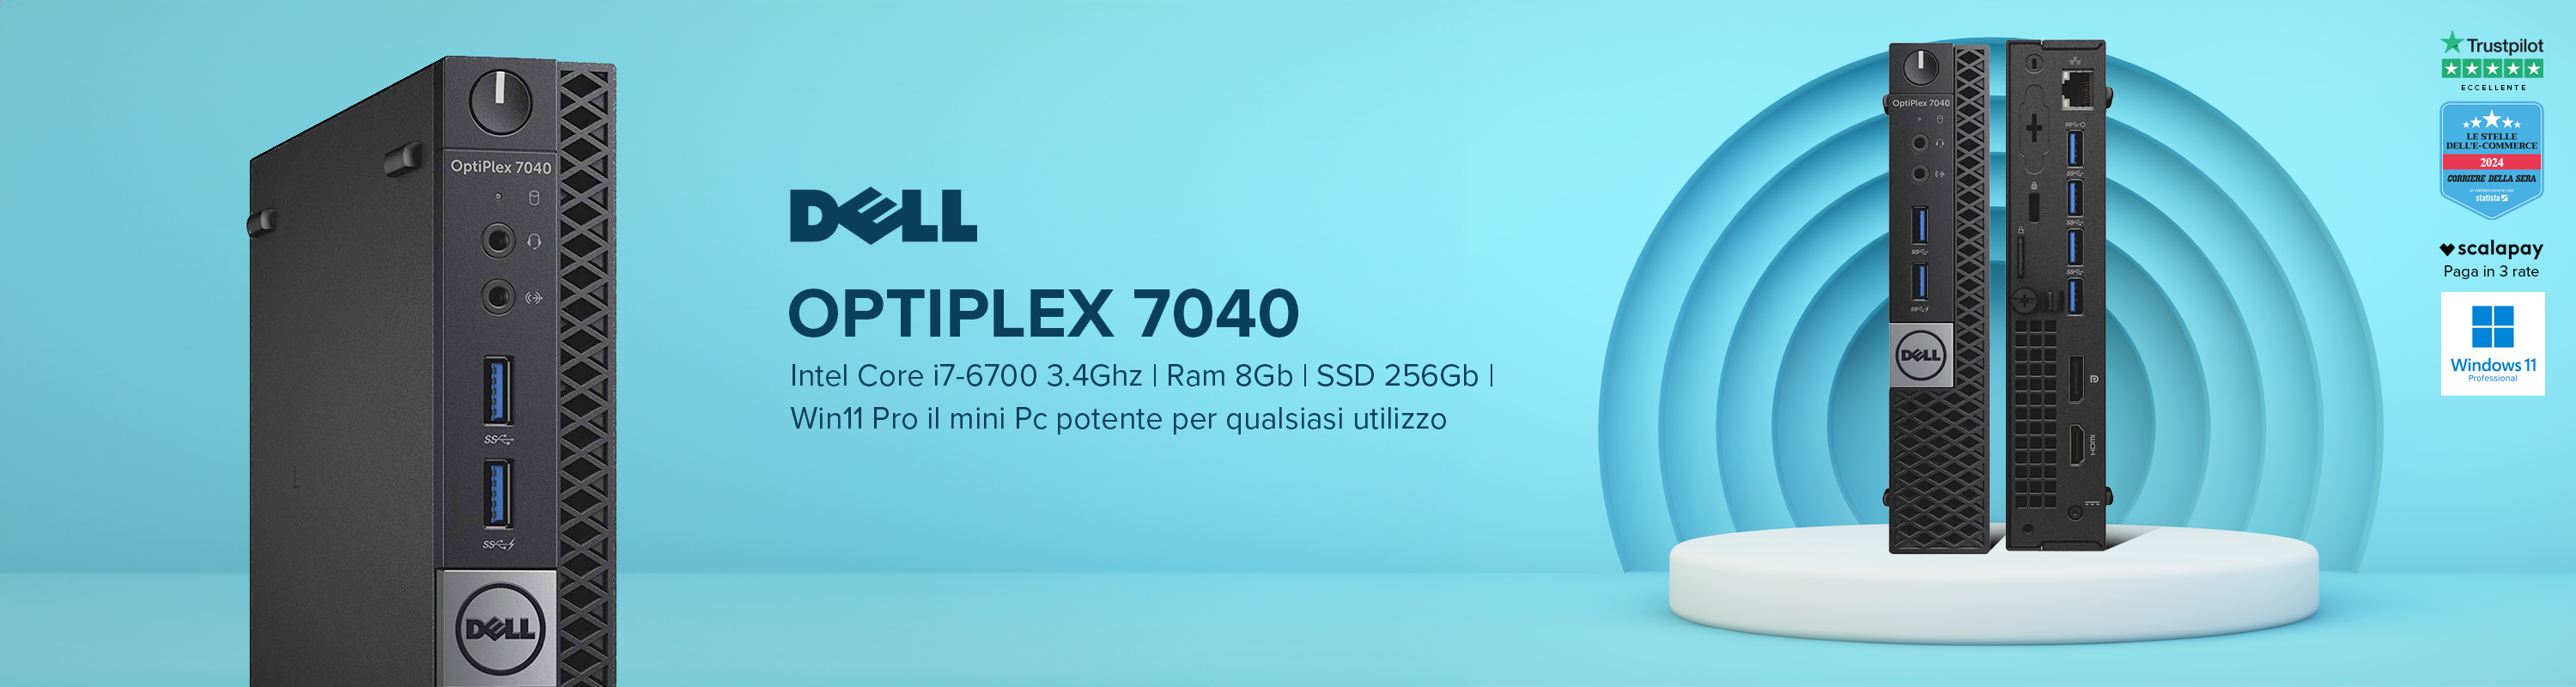 Dell Optiplex 7040 mini